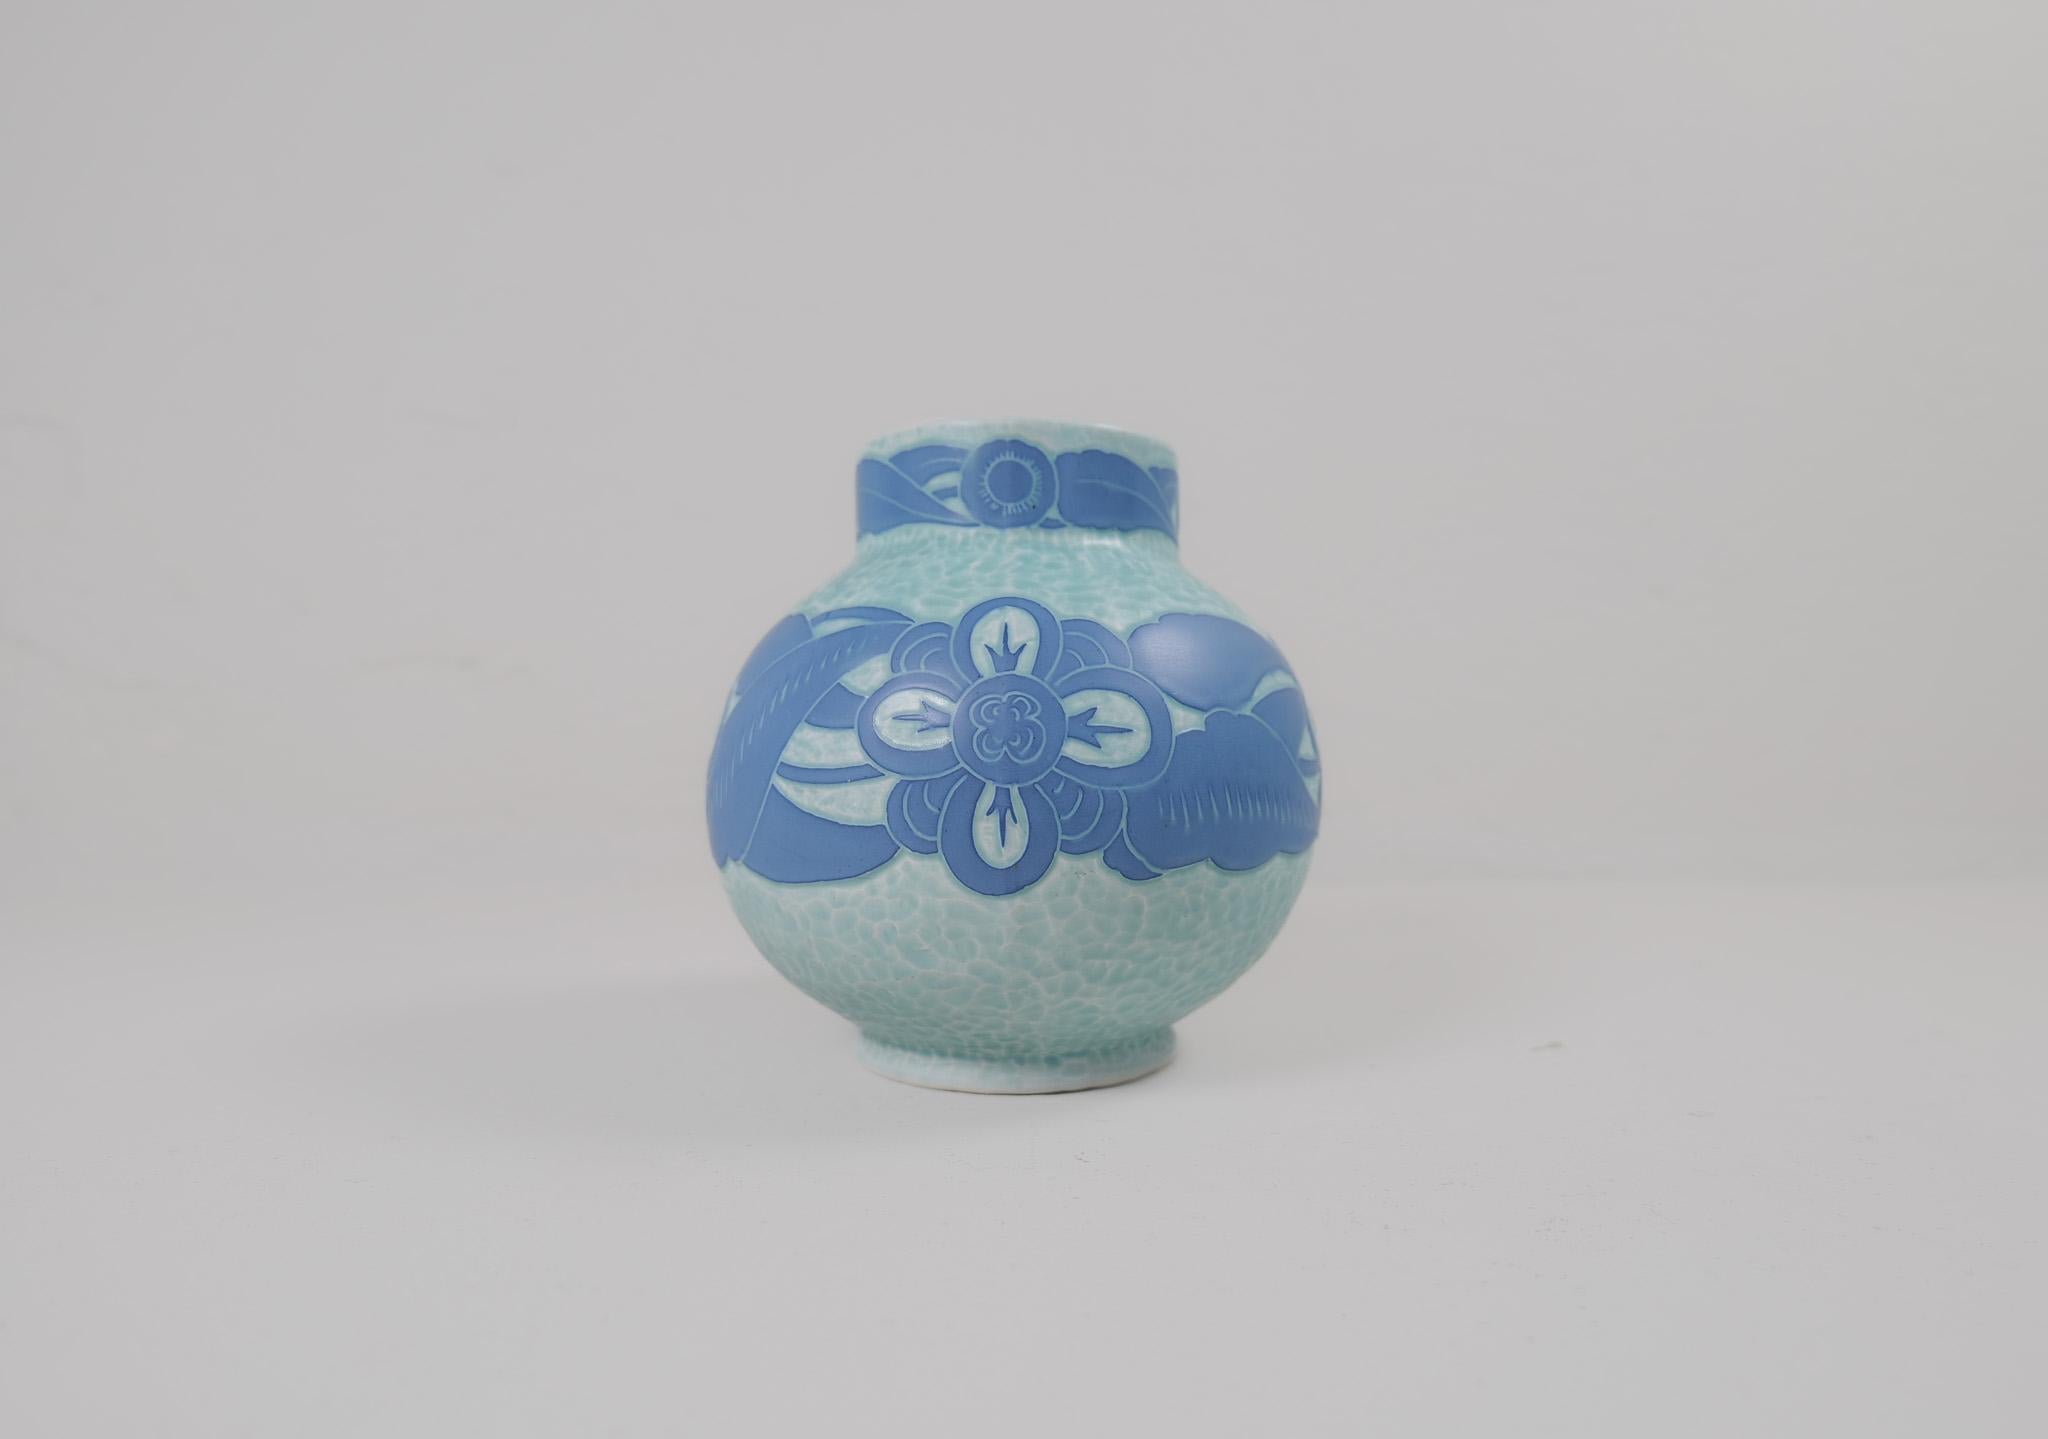 Vase Art Déco Sgraffito décoré d'un motif floral, par Josef Ekberg pour Gustavsberg.
Le sgraffite est une façon de combiner deux couches pour former un motif. La deuxième couche est grattée et il reste un fond bleu clair avec un magnifique motif sur